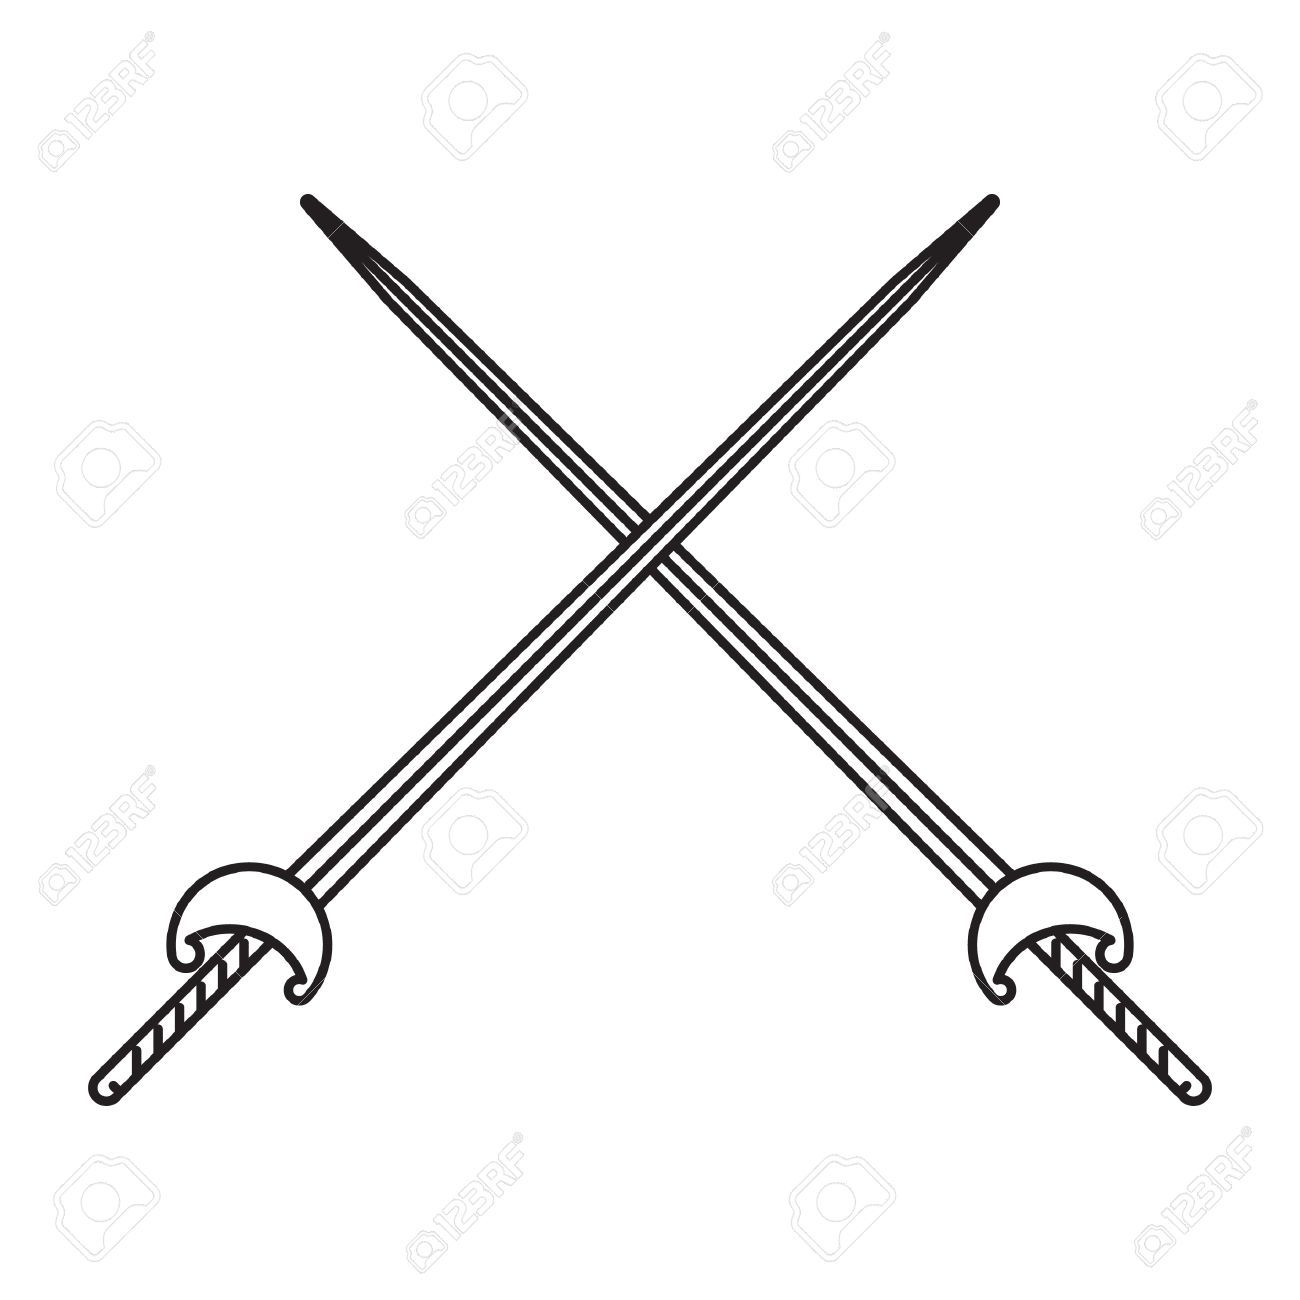 fencing clipart fencing sword